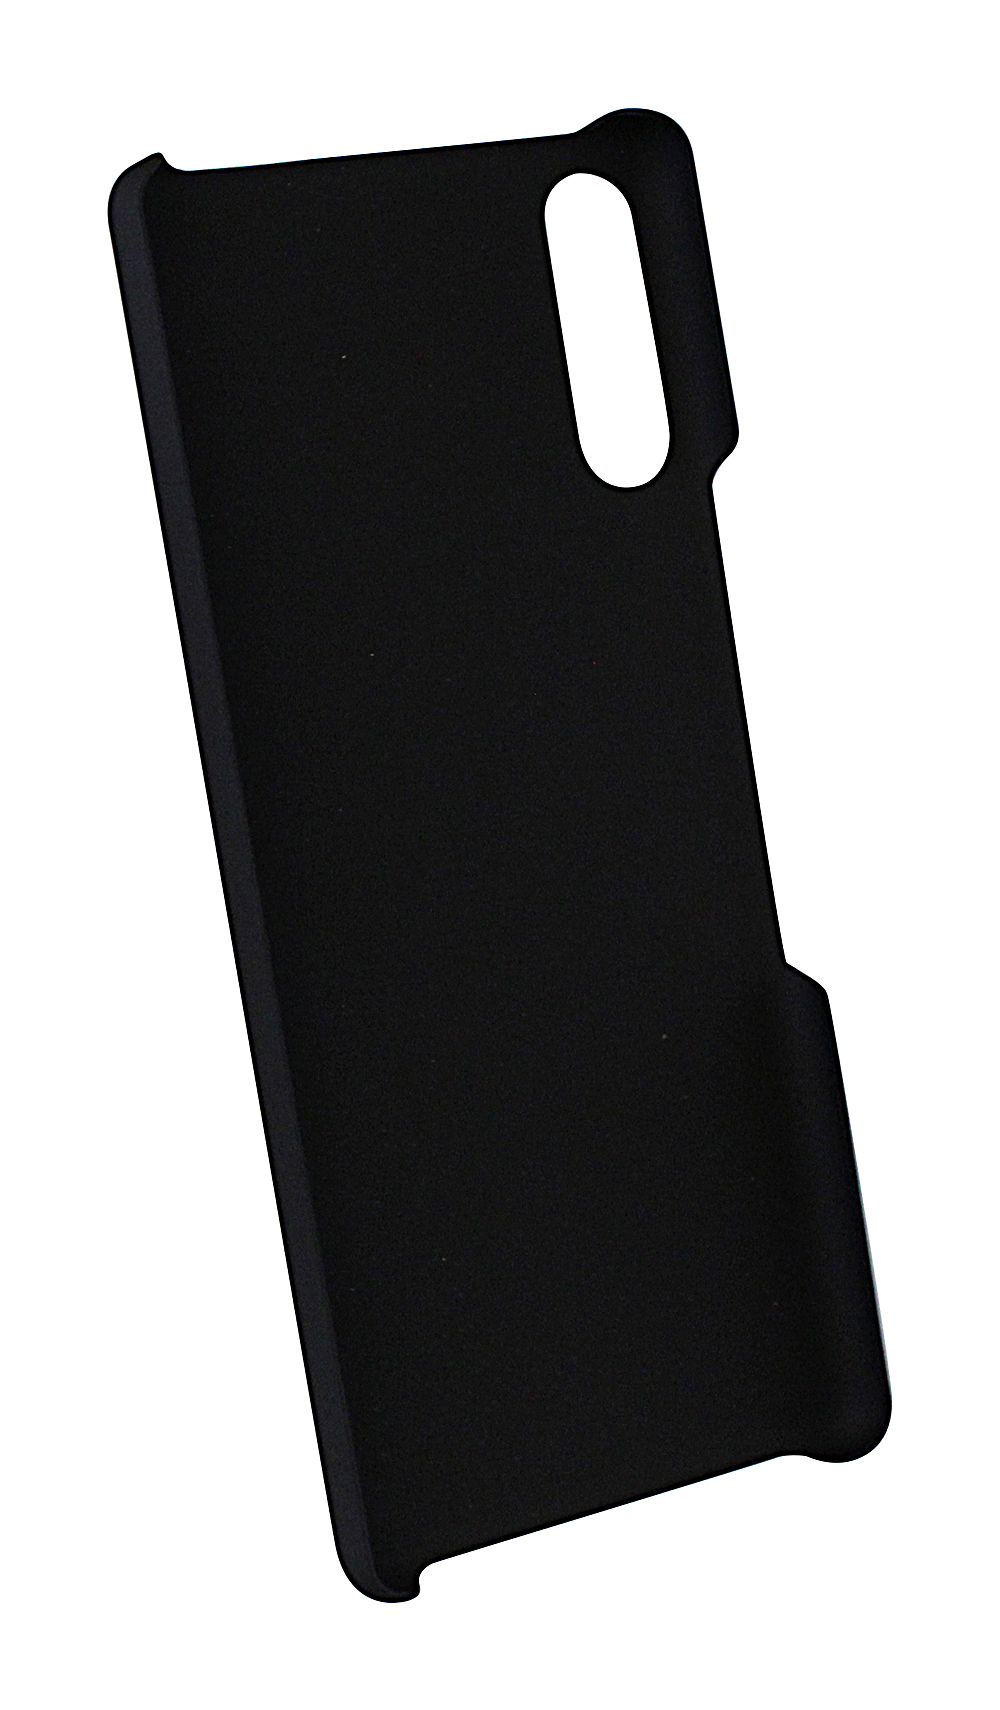 Skimblocker Magnet Designwallet Sony Xperia L4